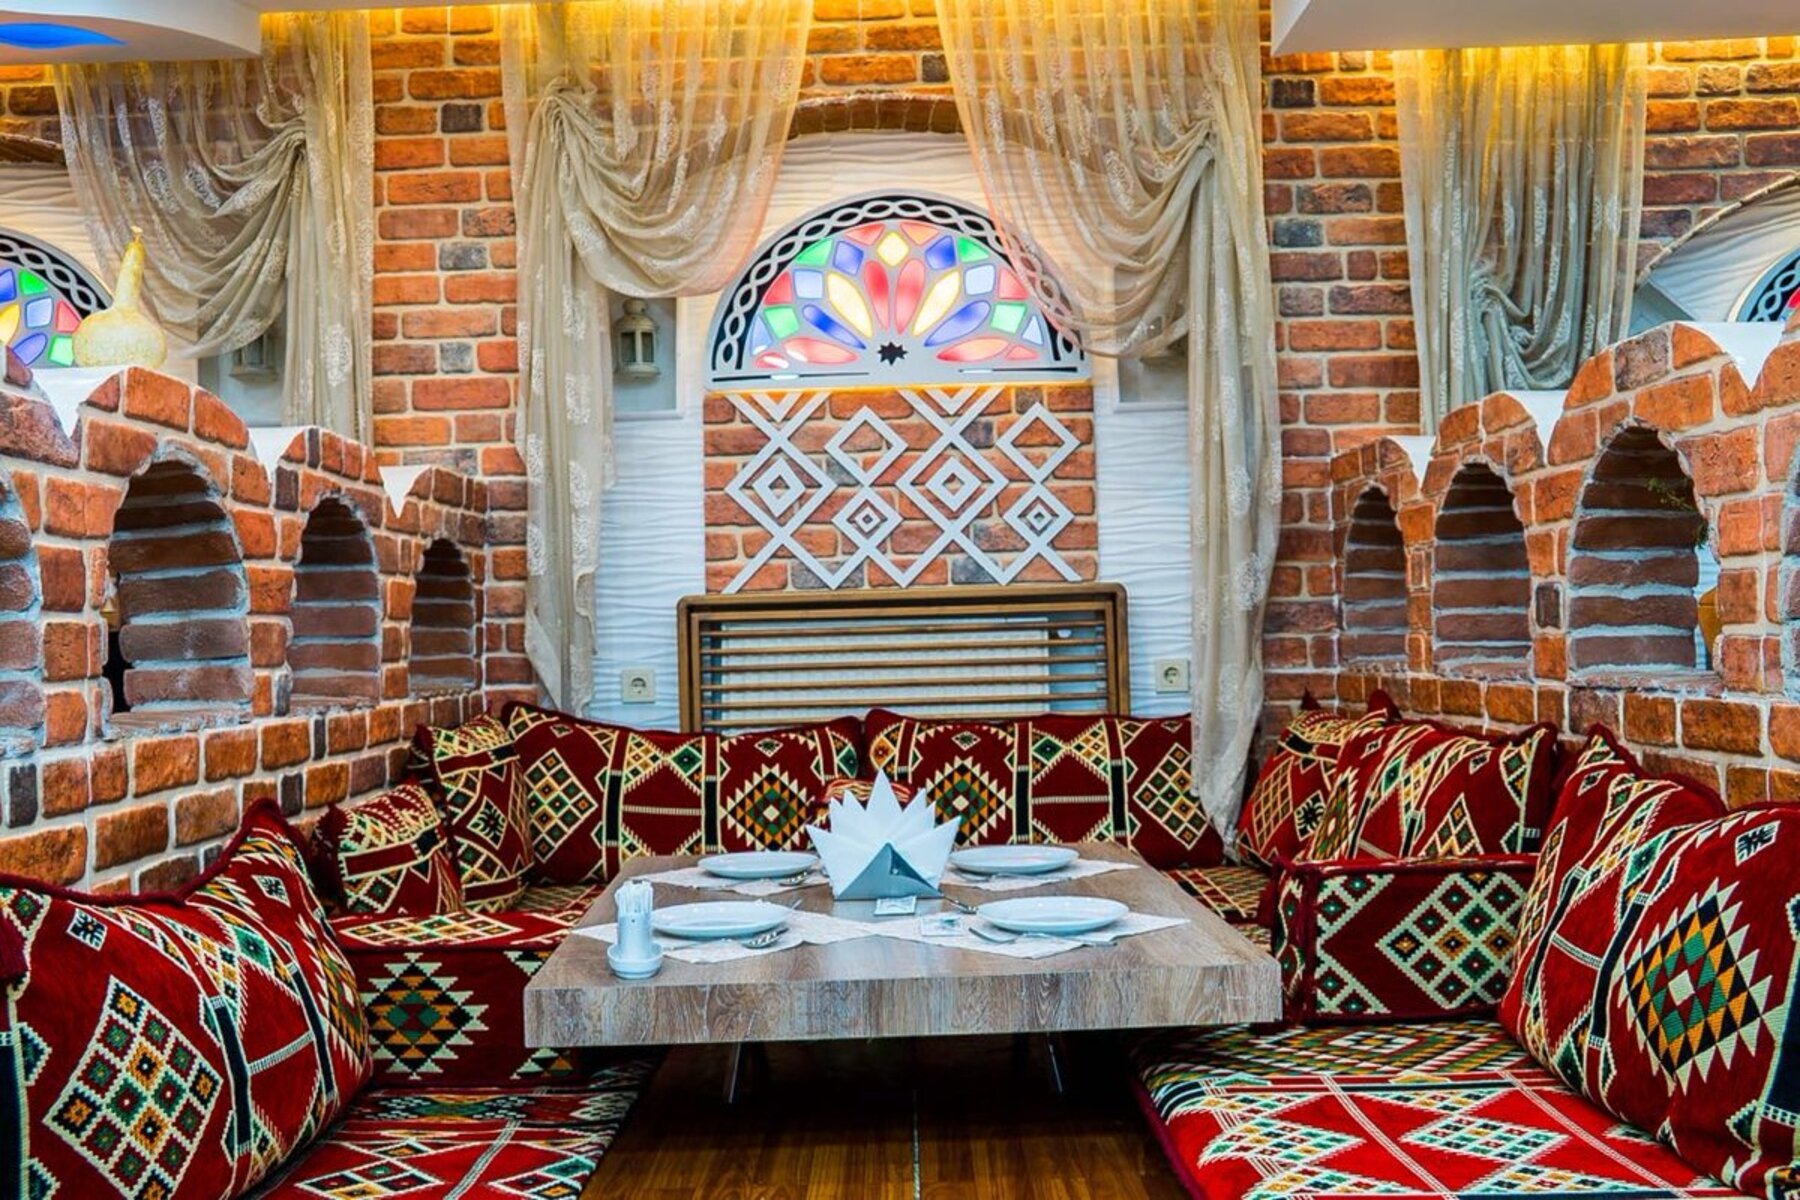 تتميز إسطنبول بتنوع المطاعم العربية فيها فتجد المصرية والسورية وغيرها وفي هذا التقرير اخترنا لكم أفضل 3 مطاعم يمنية شهيرة ضمن الولاية الواقعة شمال غربي تركيا